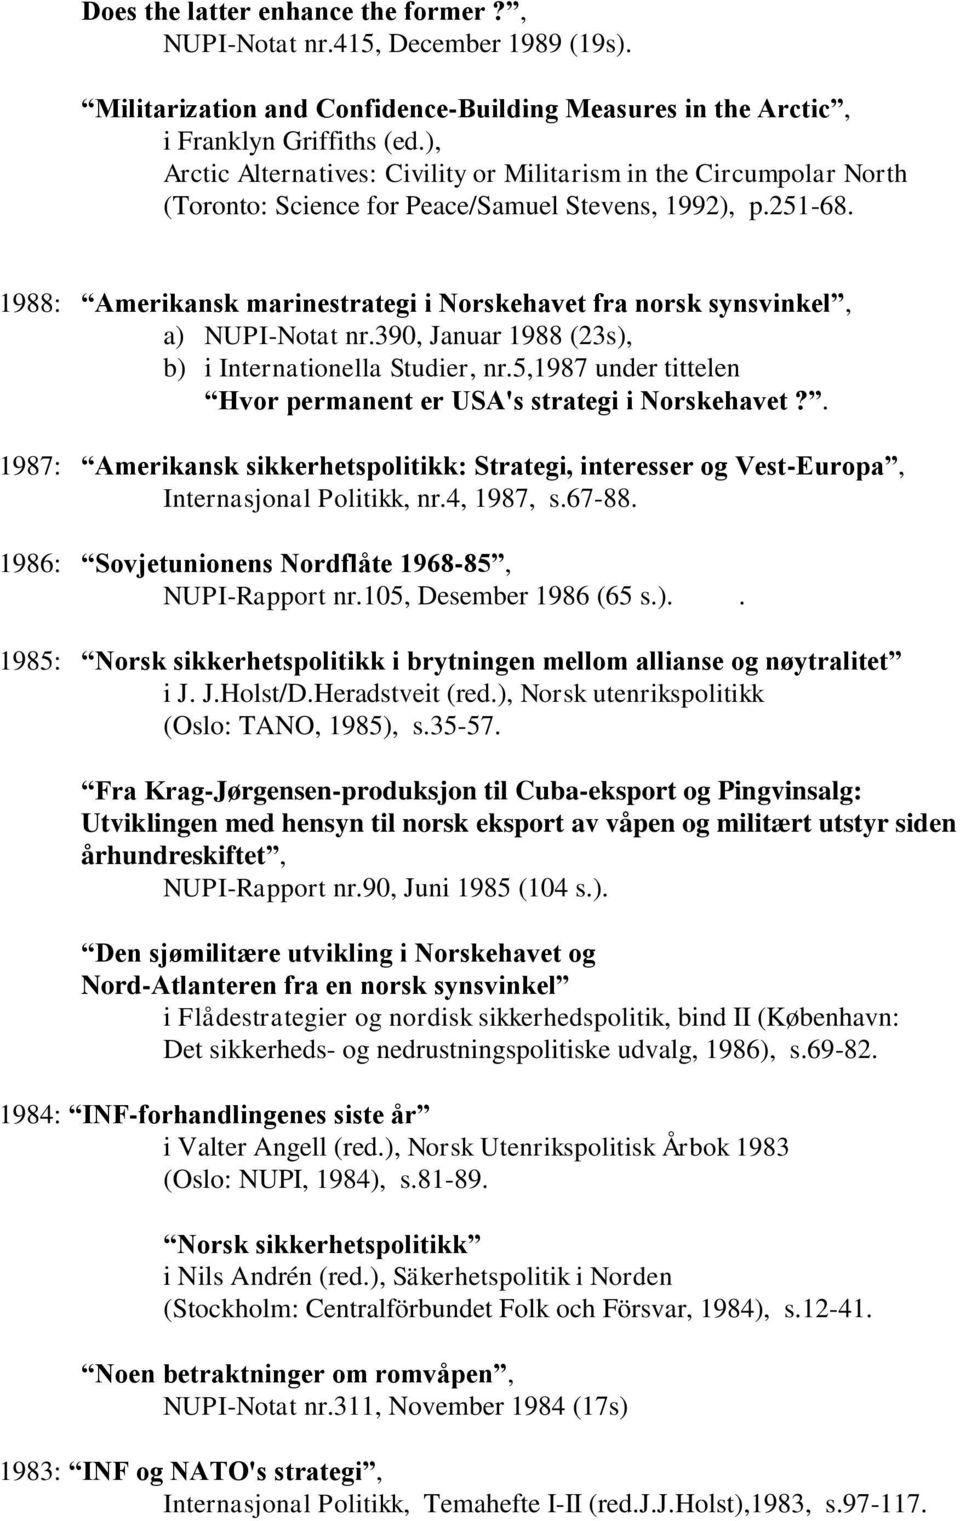 1988: Amerikansk marinestrategi i Norskehavet fra norsk synsvinkel, a) NUPI-Notat nr.390, Januar 1988 (23s), b) i Internationella Studier, nr.